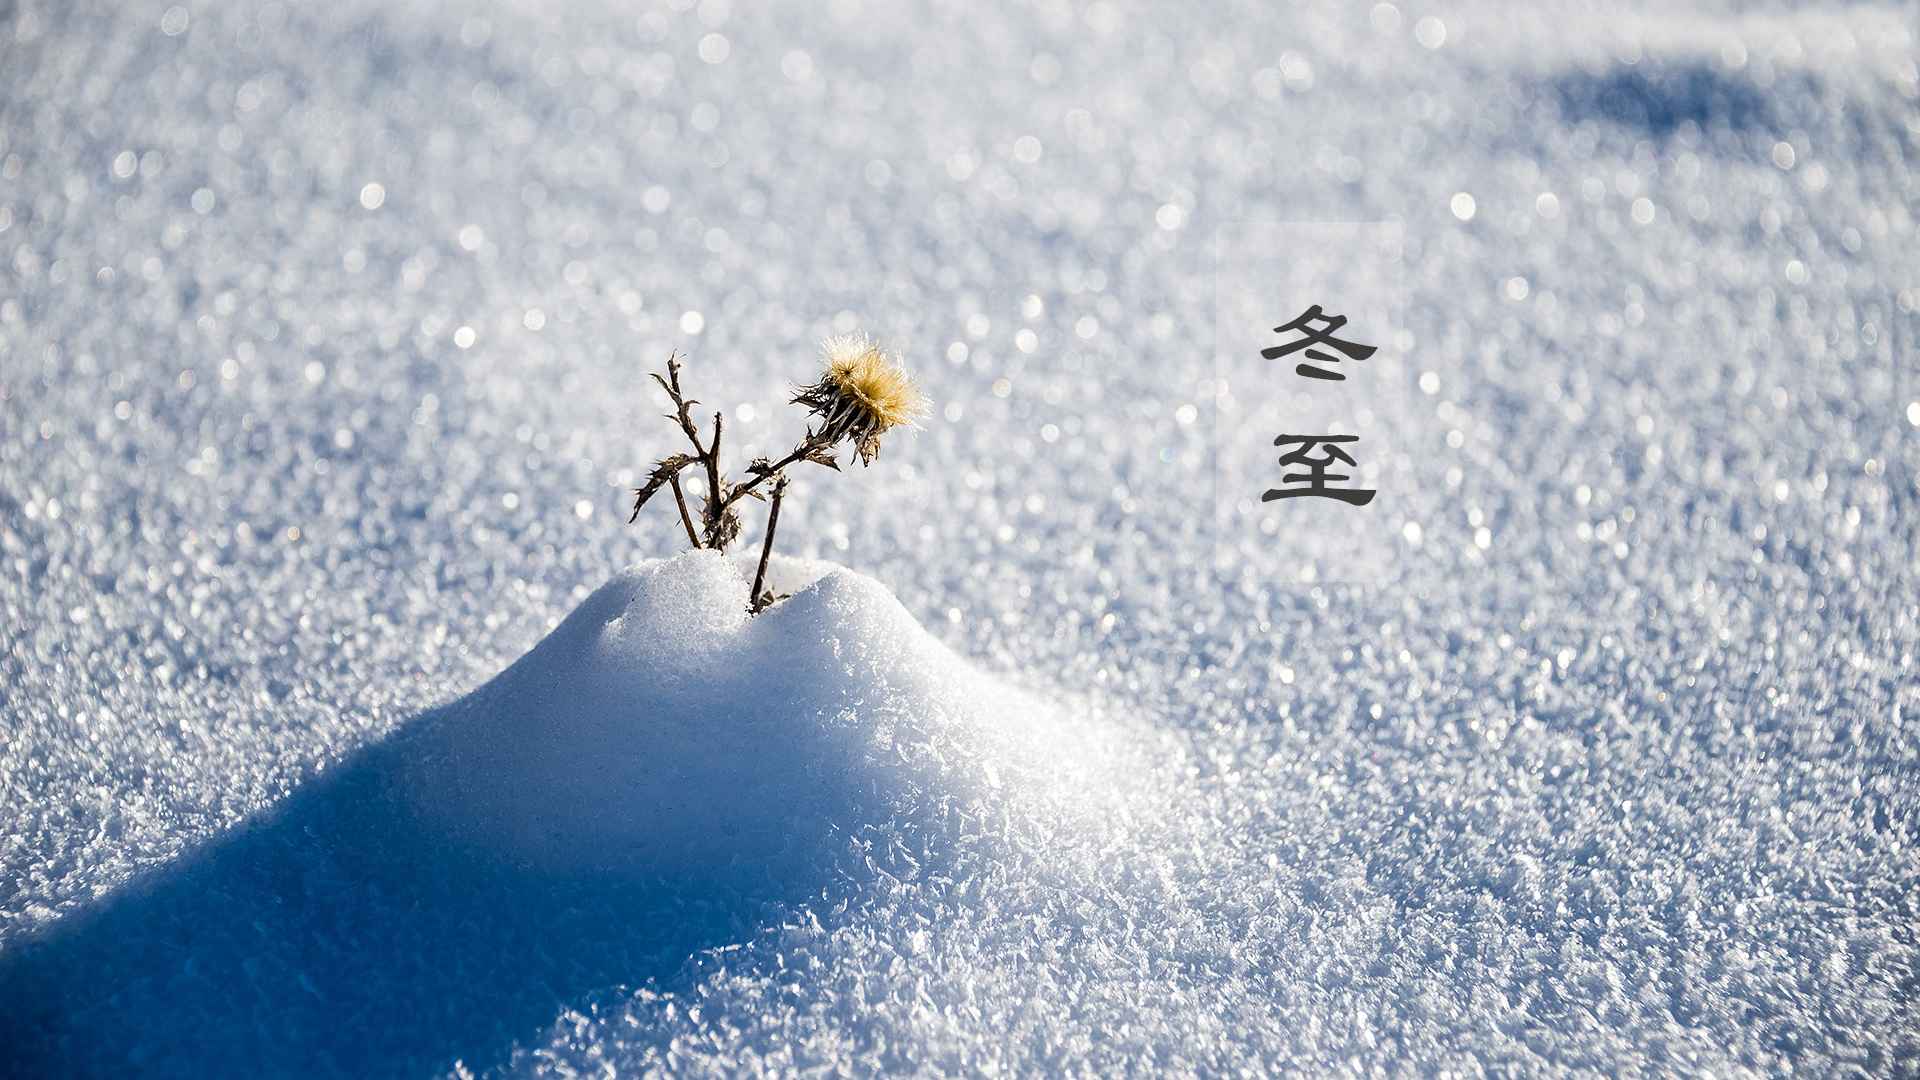 冬至节气雪景唯美壁纸图片-